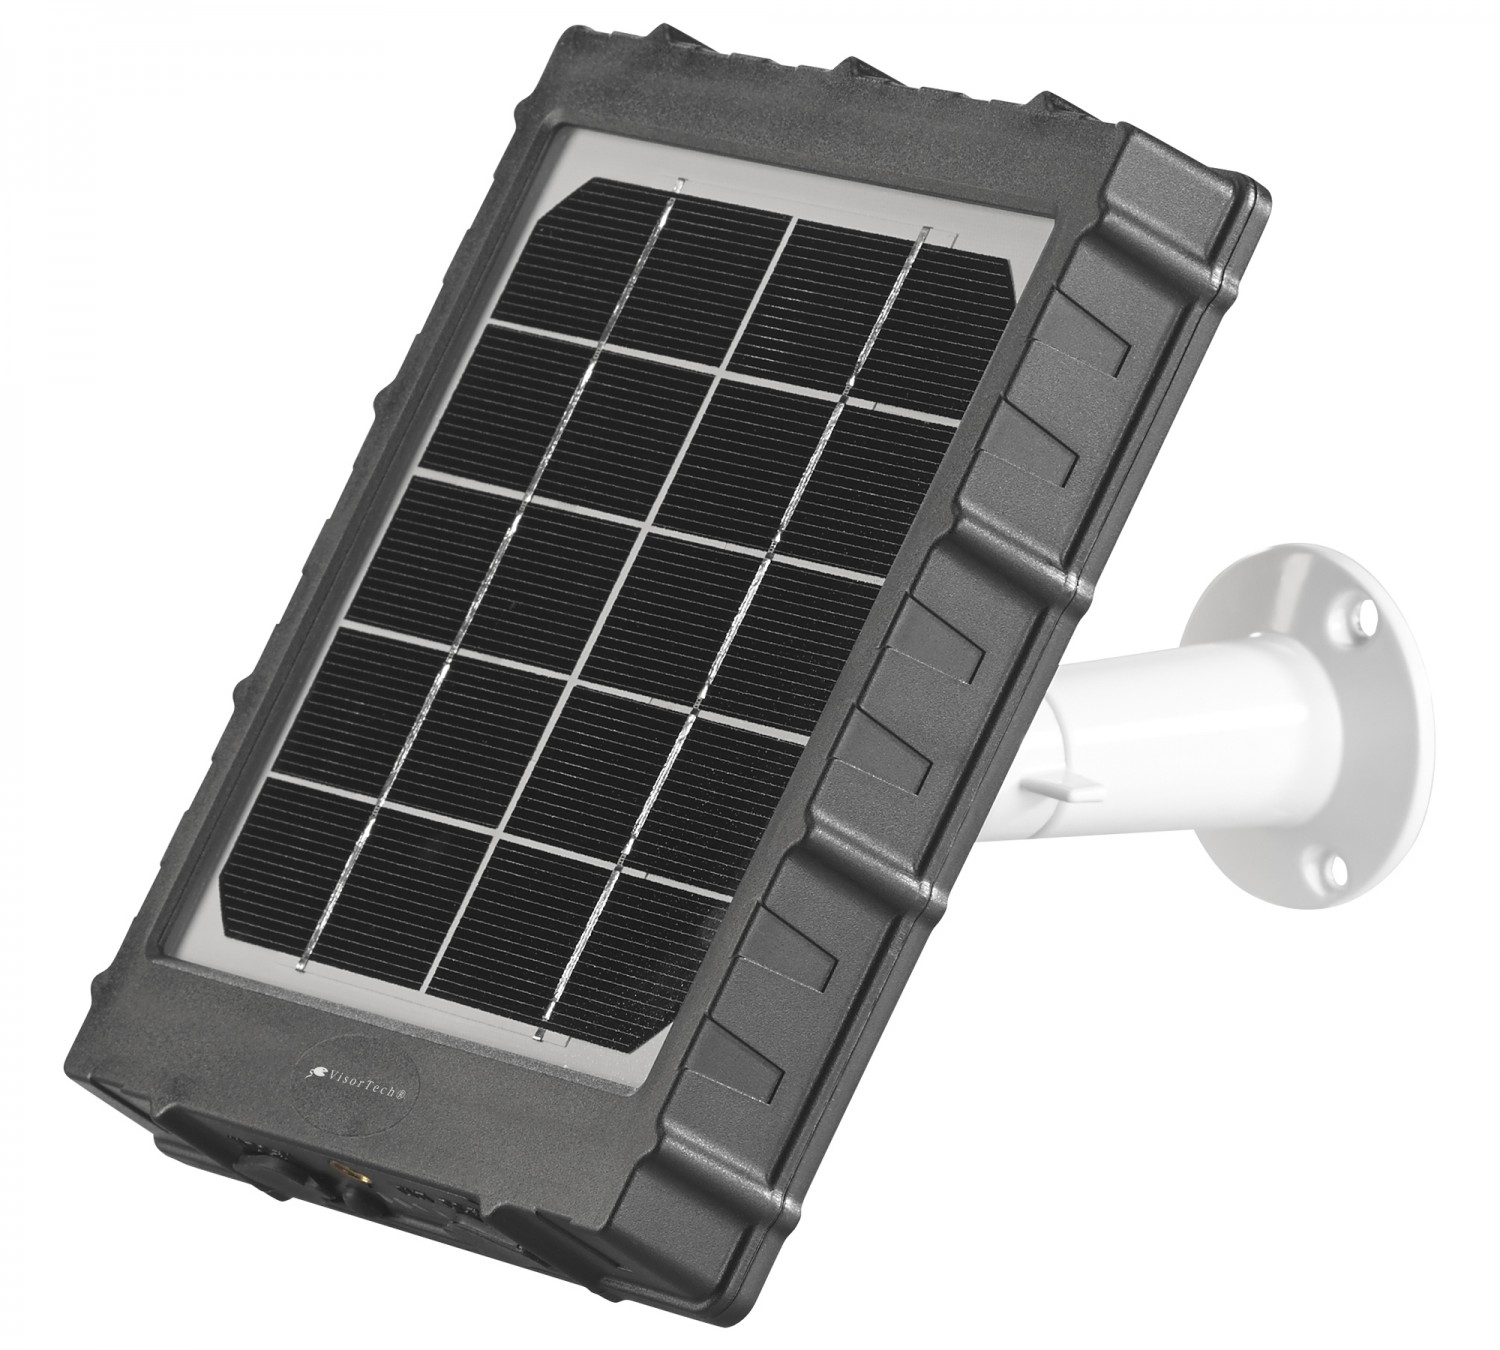 Produktvorstellung Für die flexible Kamera-Überwachung: Wetterfestes Akku-Solarpanel von VisorTech - News, Bild 1